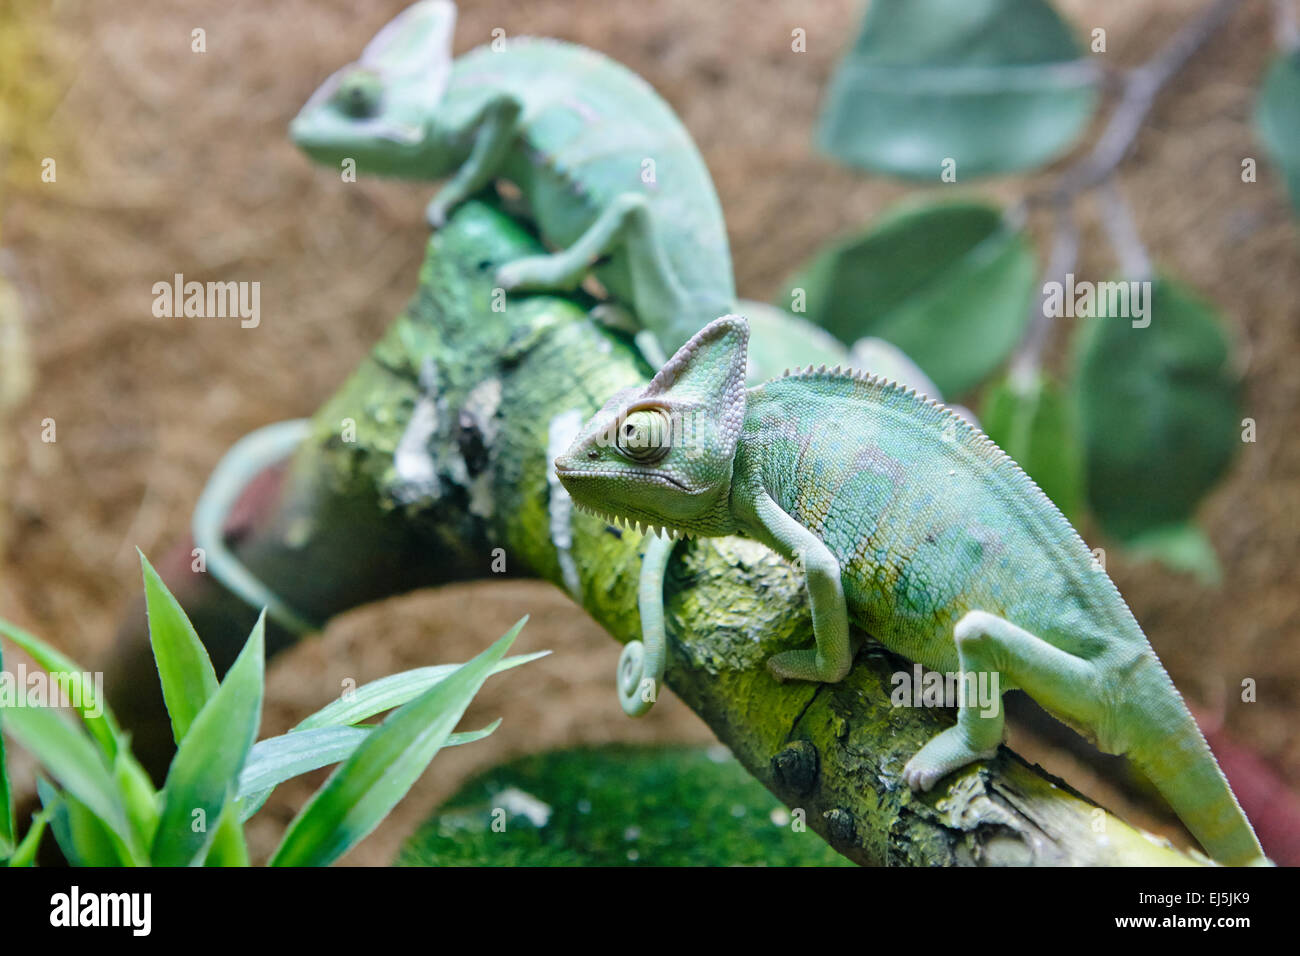 The Veiled Chameleon. Scientific name: Chamaeleo calyptratus. Vinpearl Land Aquarium, Phu Quoc, Vietnam. Stock Photo